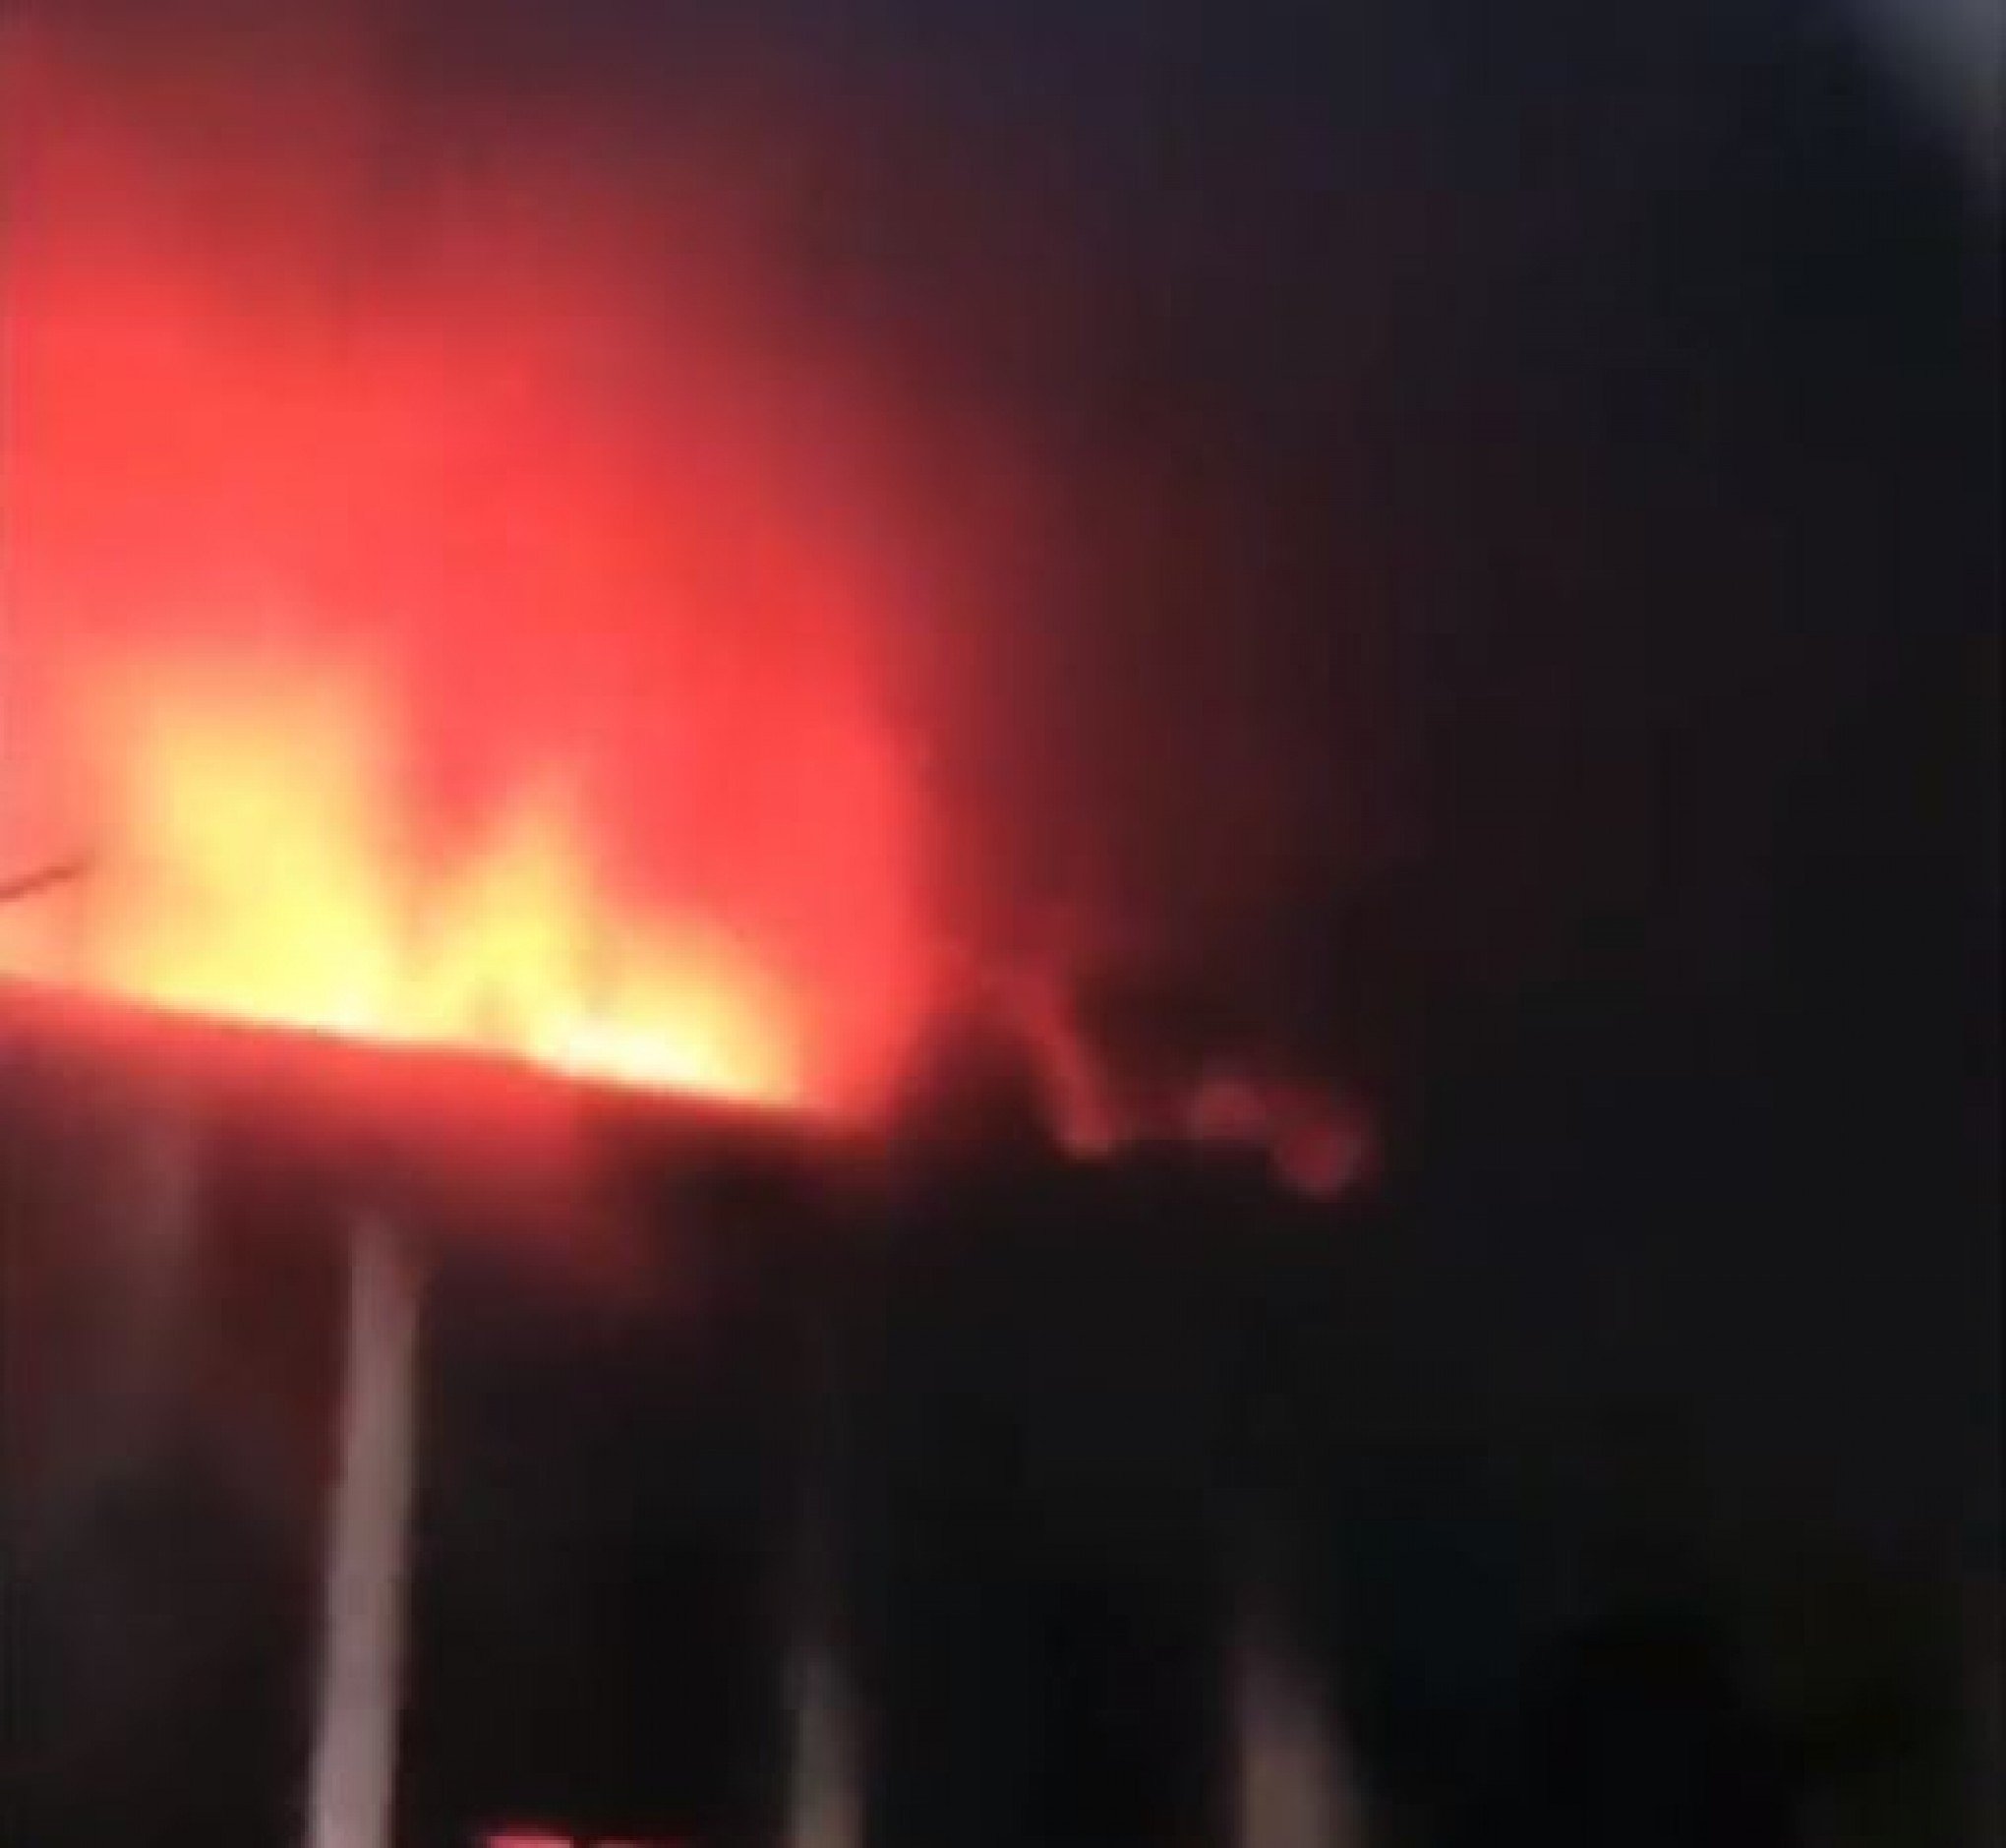 VÍDEO: Incêndio deixa 13 mortos em complexo de boates em Múrcia, na Espanha